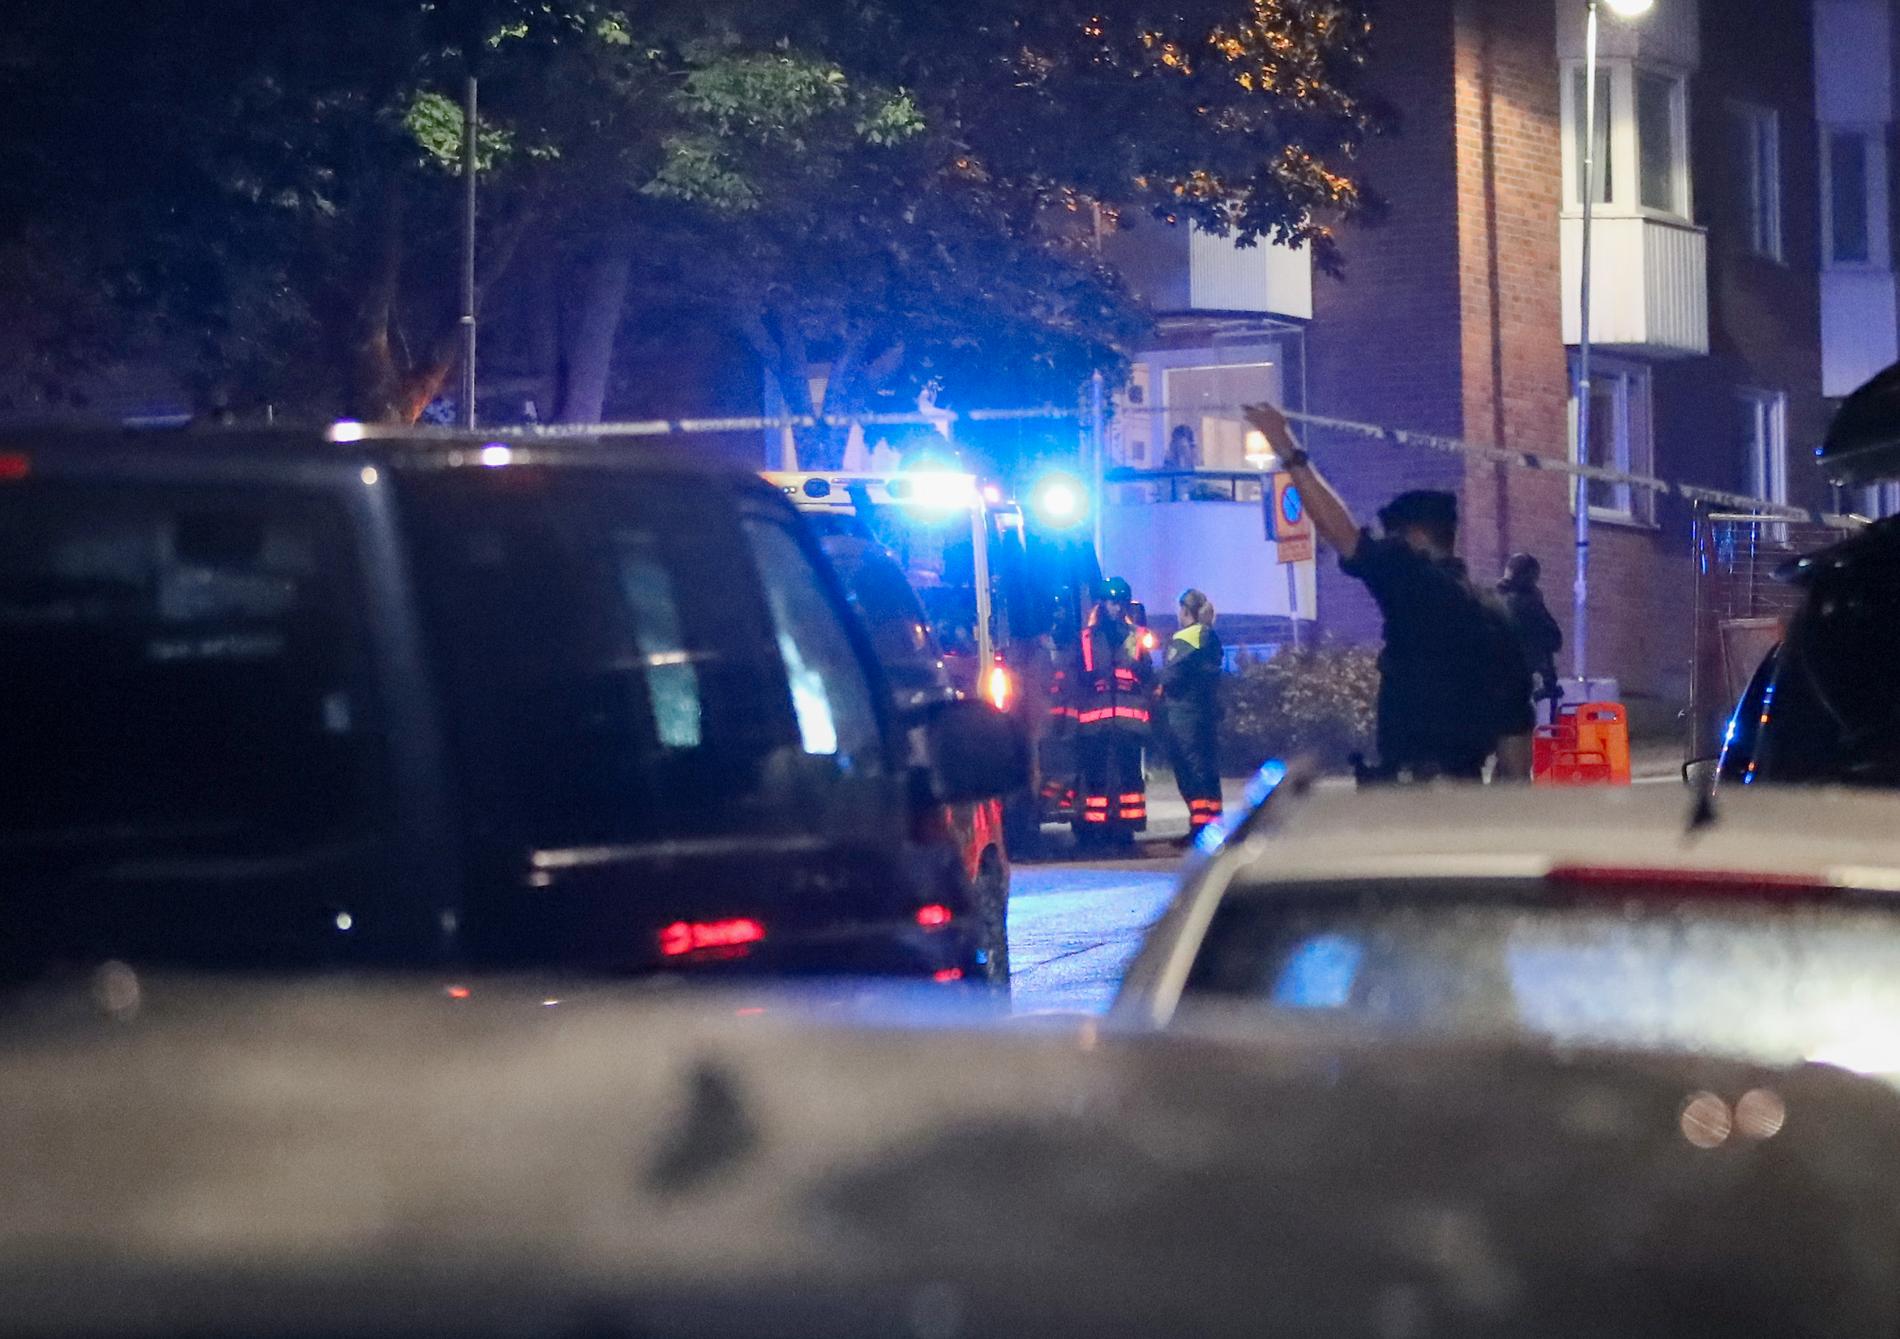 Polis på platsen där det larmades om skottlossning i Nacka, öster om Stockholm, på söndagskvällen. Arkivbild.